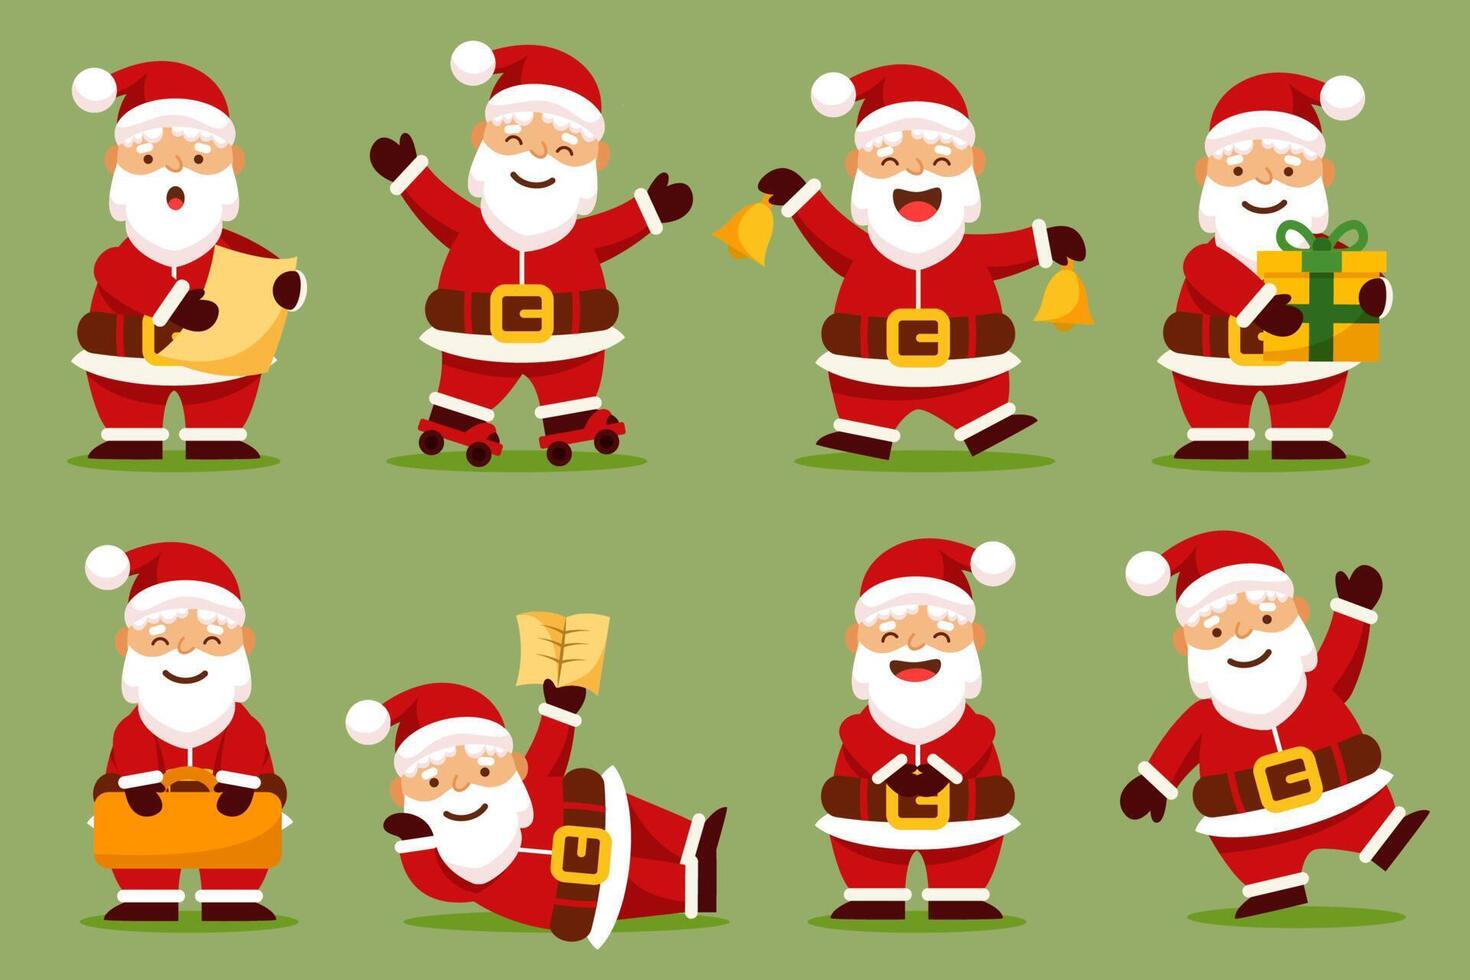 Weihnachtsmann-Figuren in verschiedenen Posen und Szenen. Frohe Weihnachten Ausschnittelement vektor